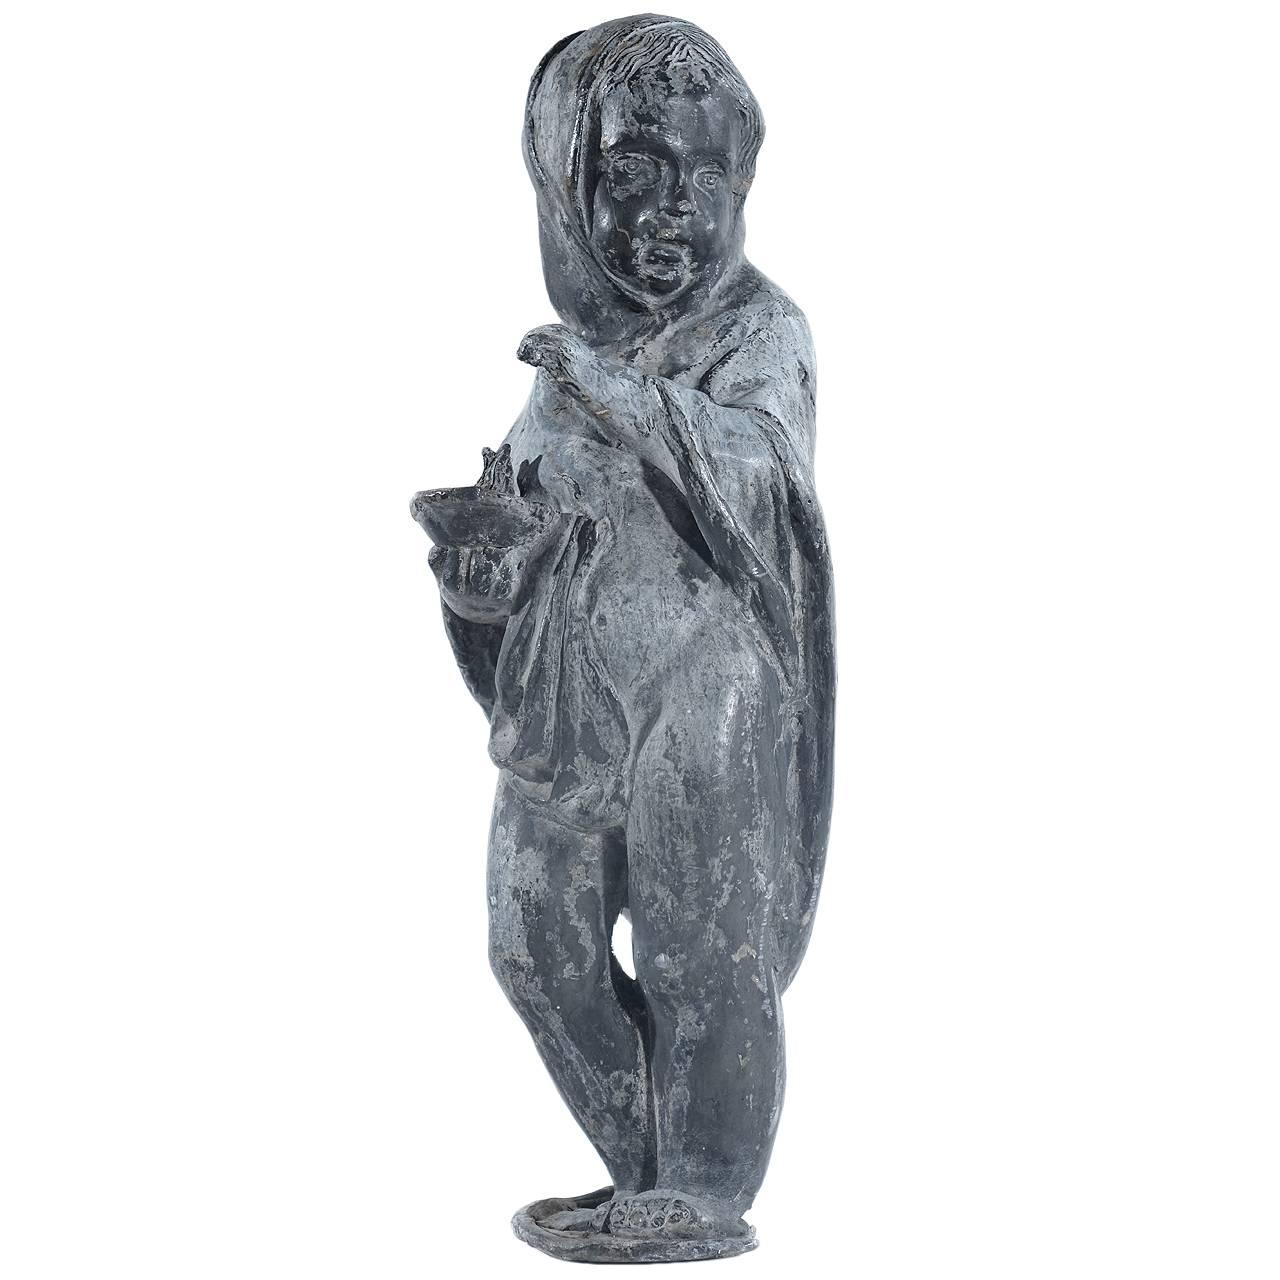 Dies ist eine 20-Zoll-Statue eines Kindes, das eine Flamme hält. Die Skulptur ist irreführend und für ihre Größe erstaunlich schwer. Die Patina ist wunderschön.